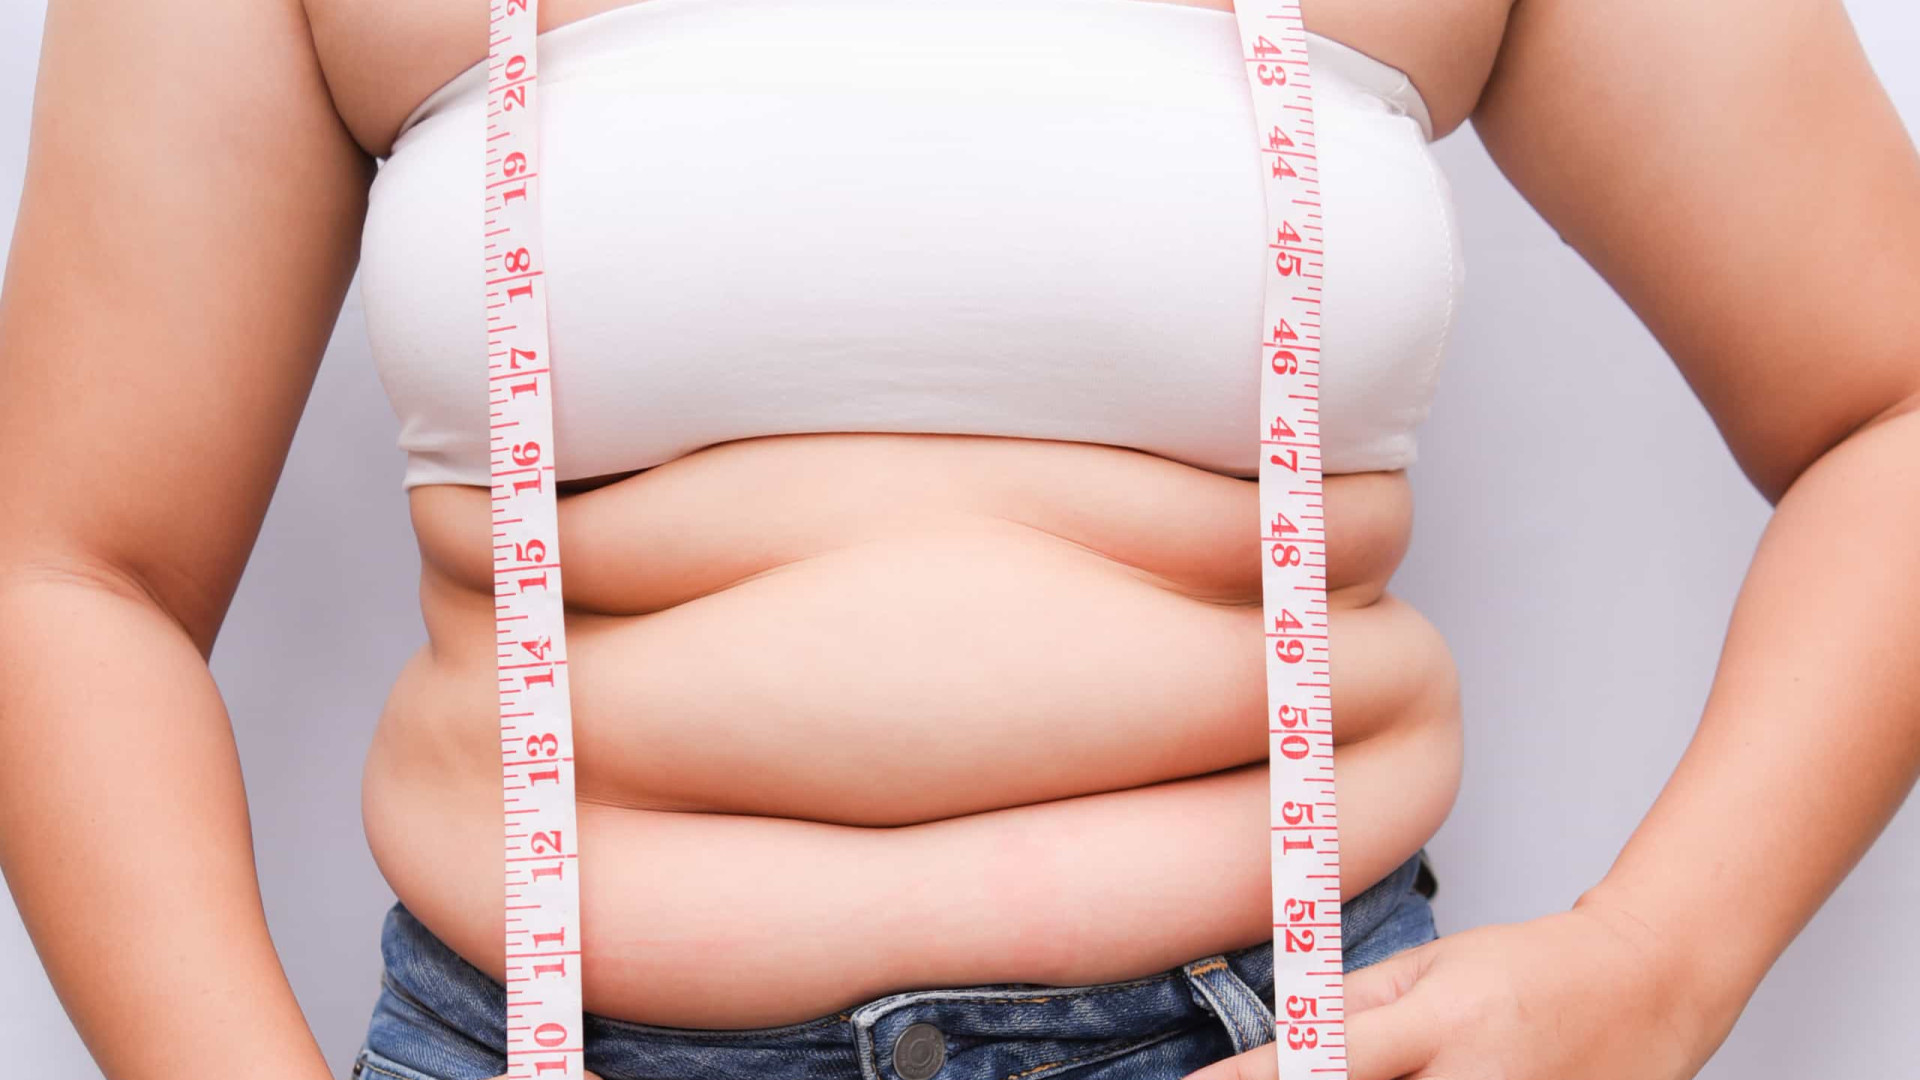 Obesidade triplica complicações por Covid, mostram estudos